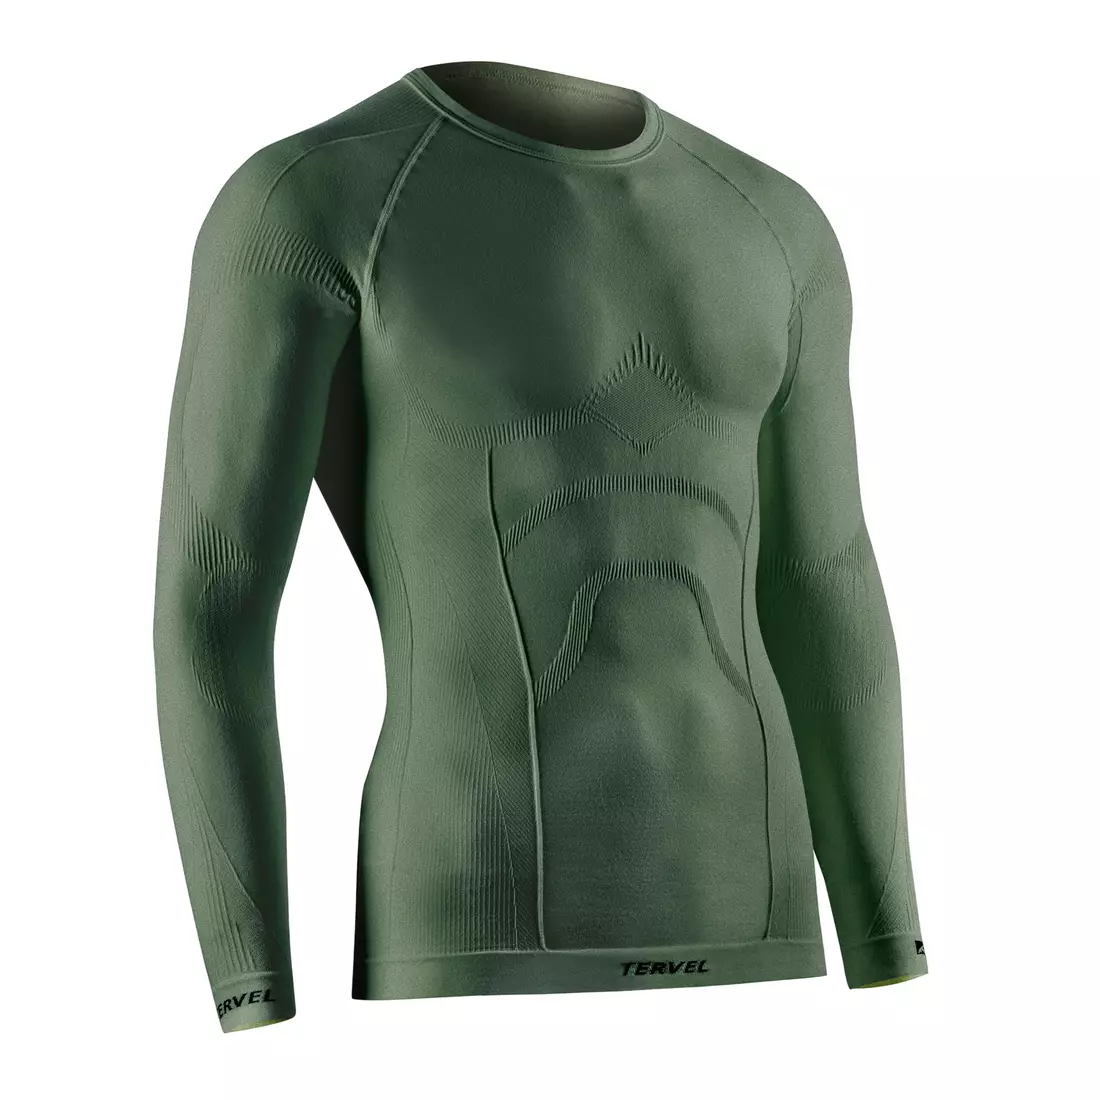 TERVEL COMFORTLINE 1002 - pánské termo triko, dlouhý rukáv, barva: Military (zelená)